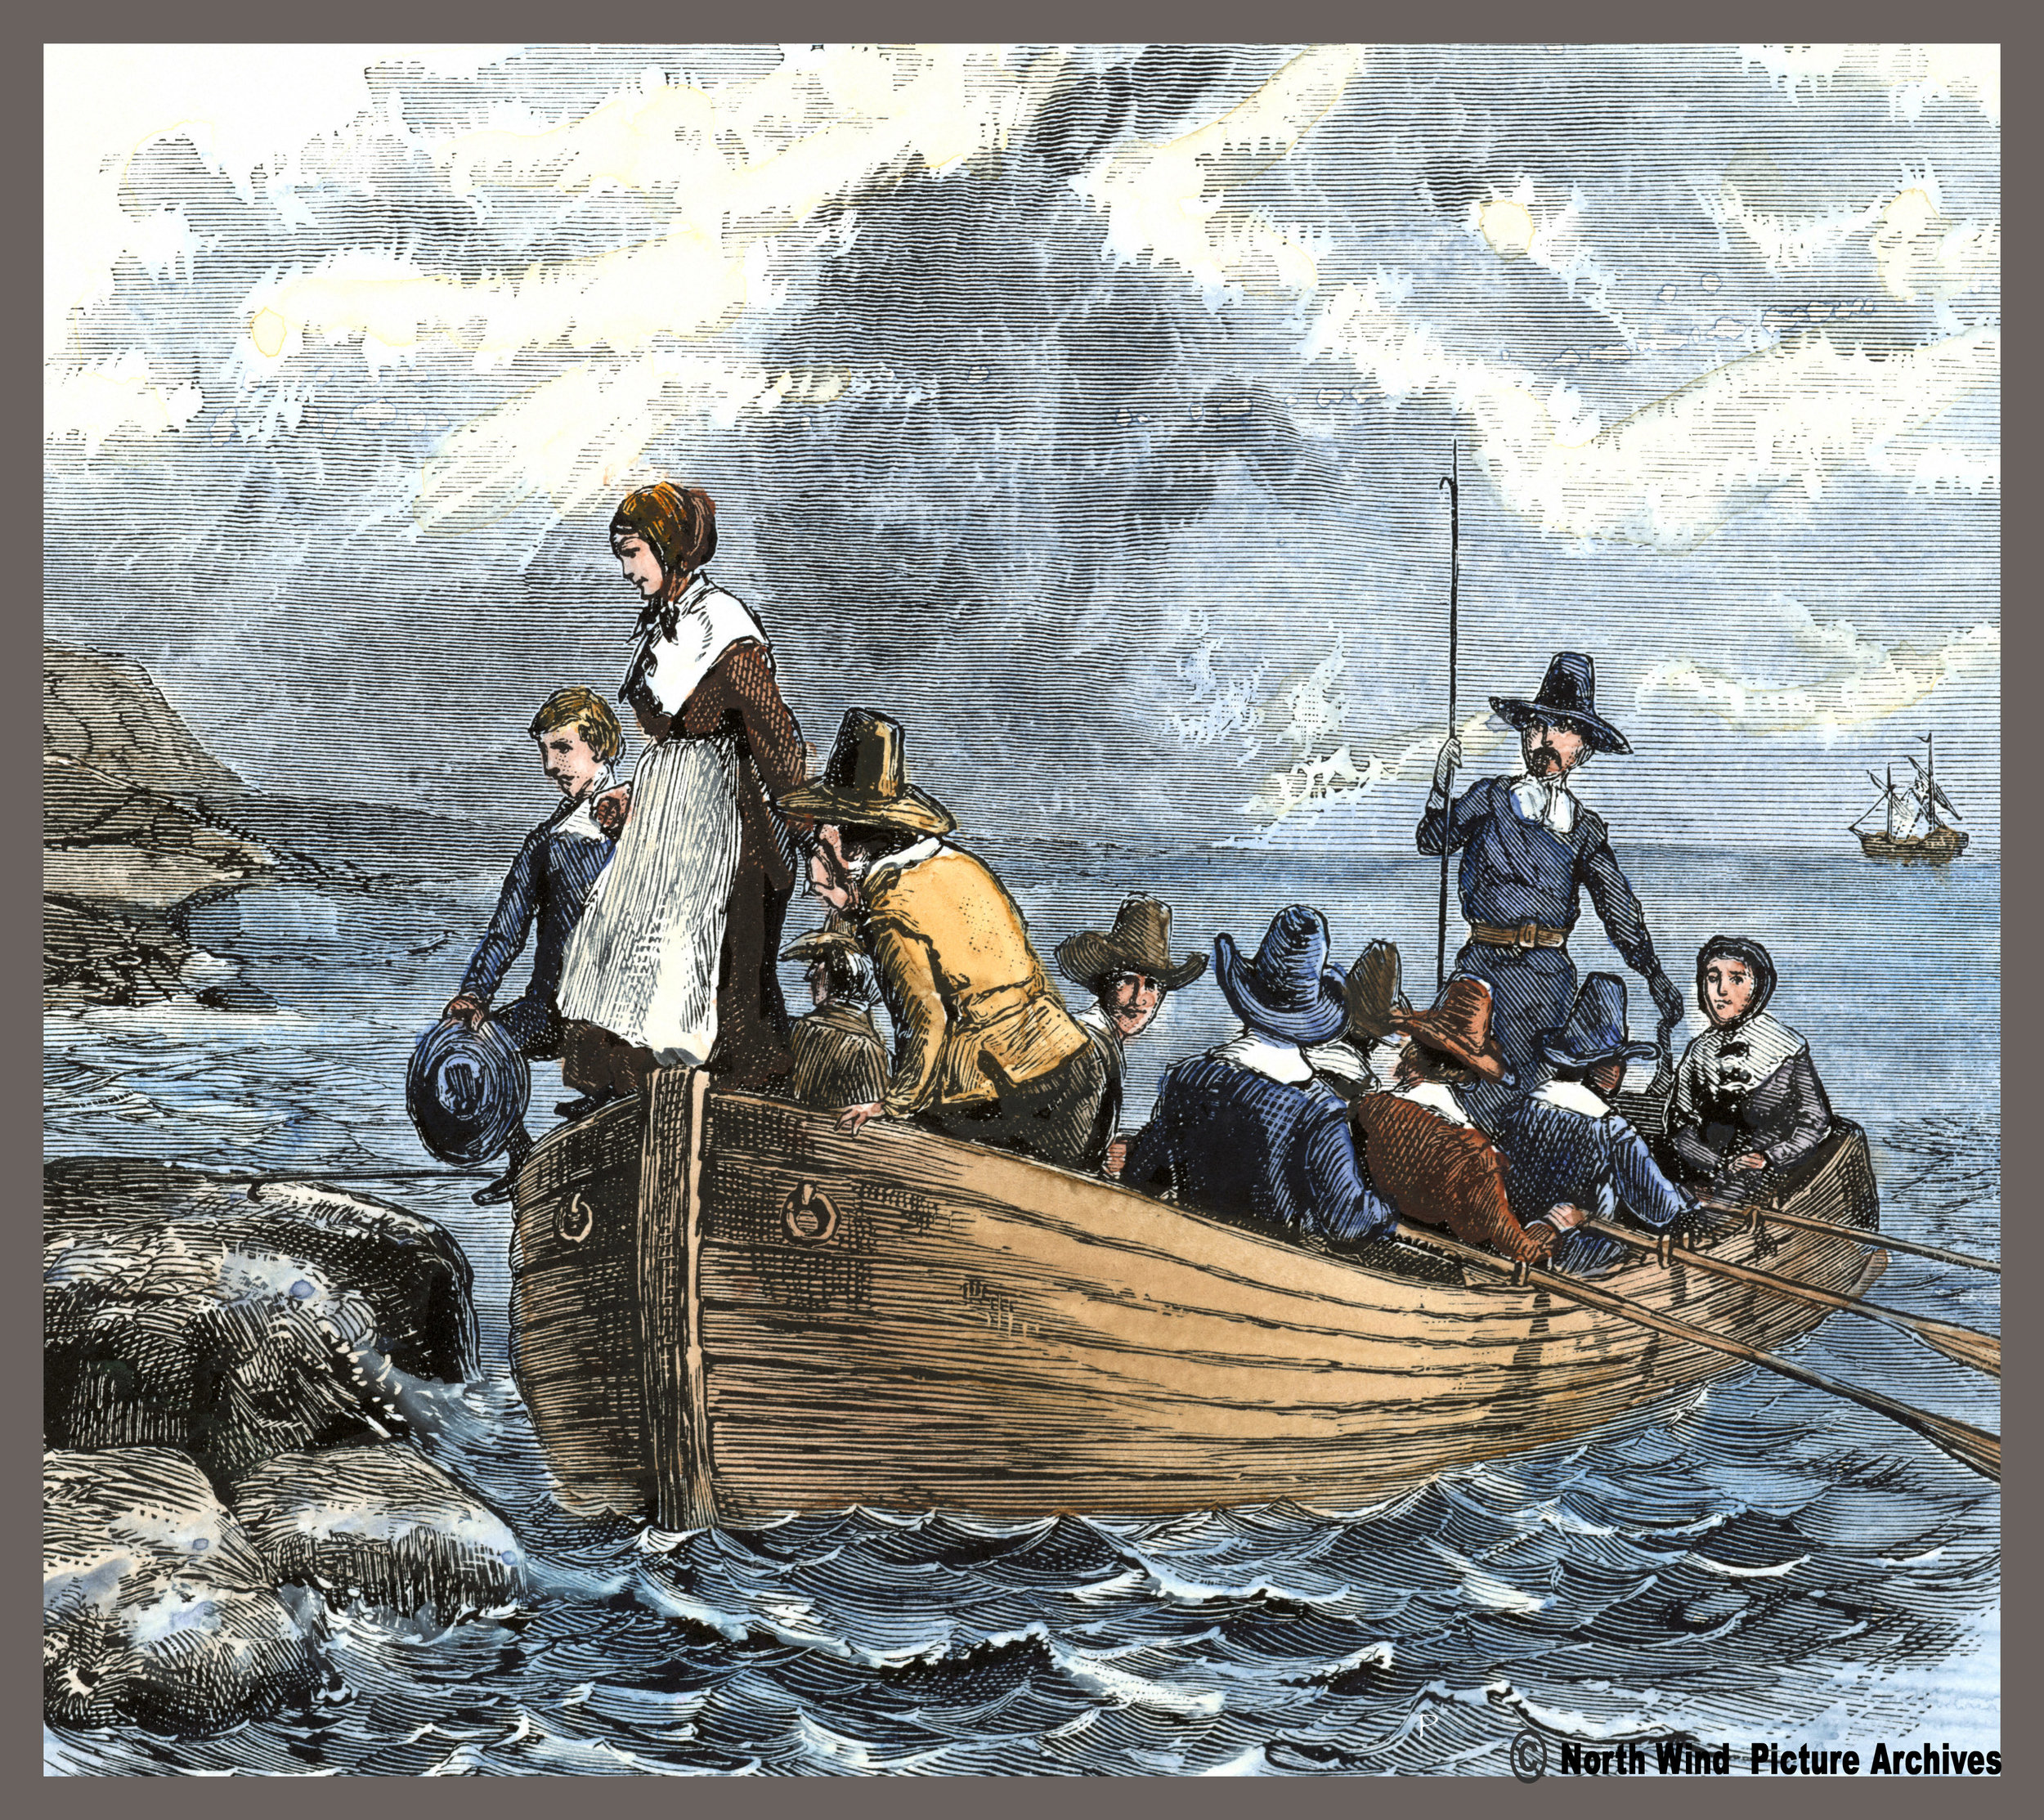 Arriving in may. Корабль Мэйфлауэр 1620. Pilgrims (Пилигримы). Корабль Mayflower первые поселенцы в Америке. Первые поселенцы в Америке 1620.